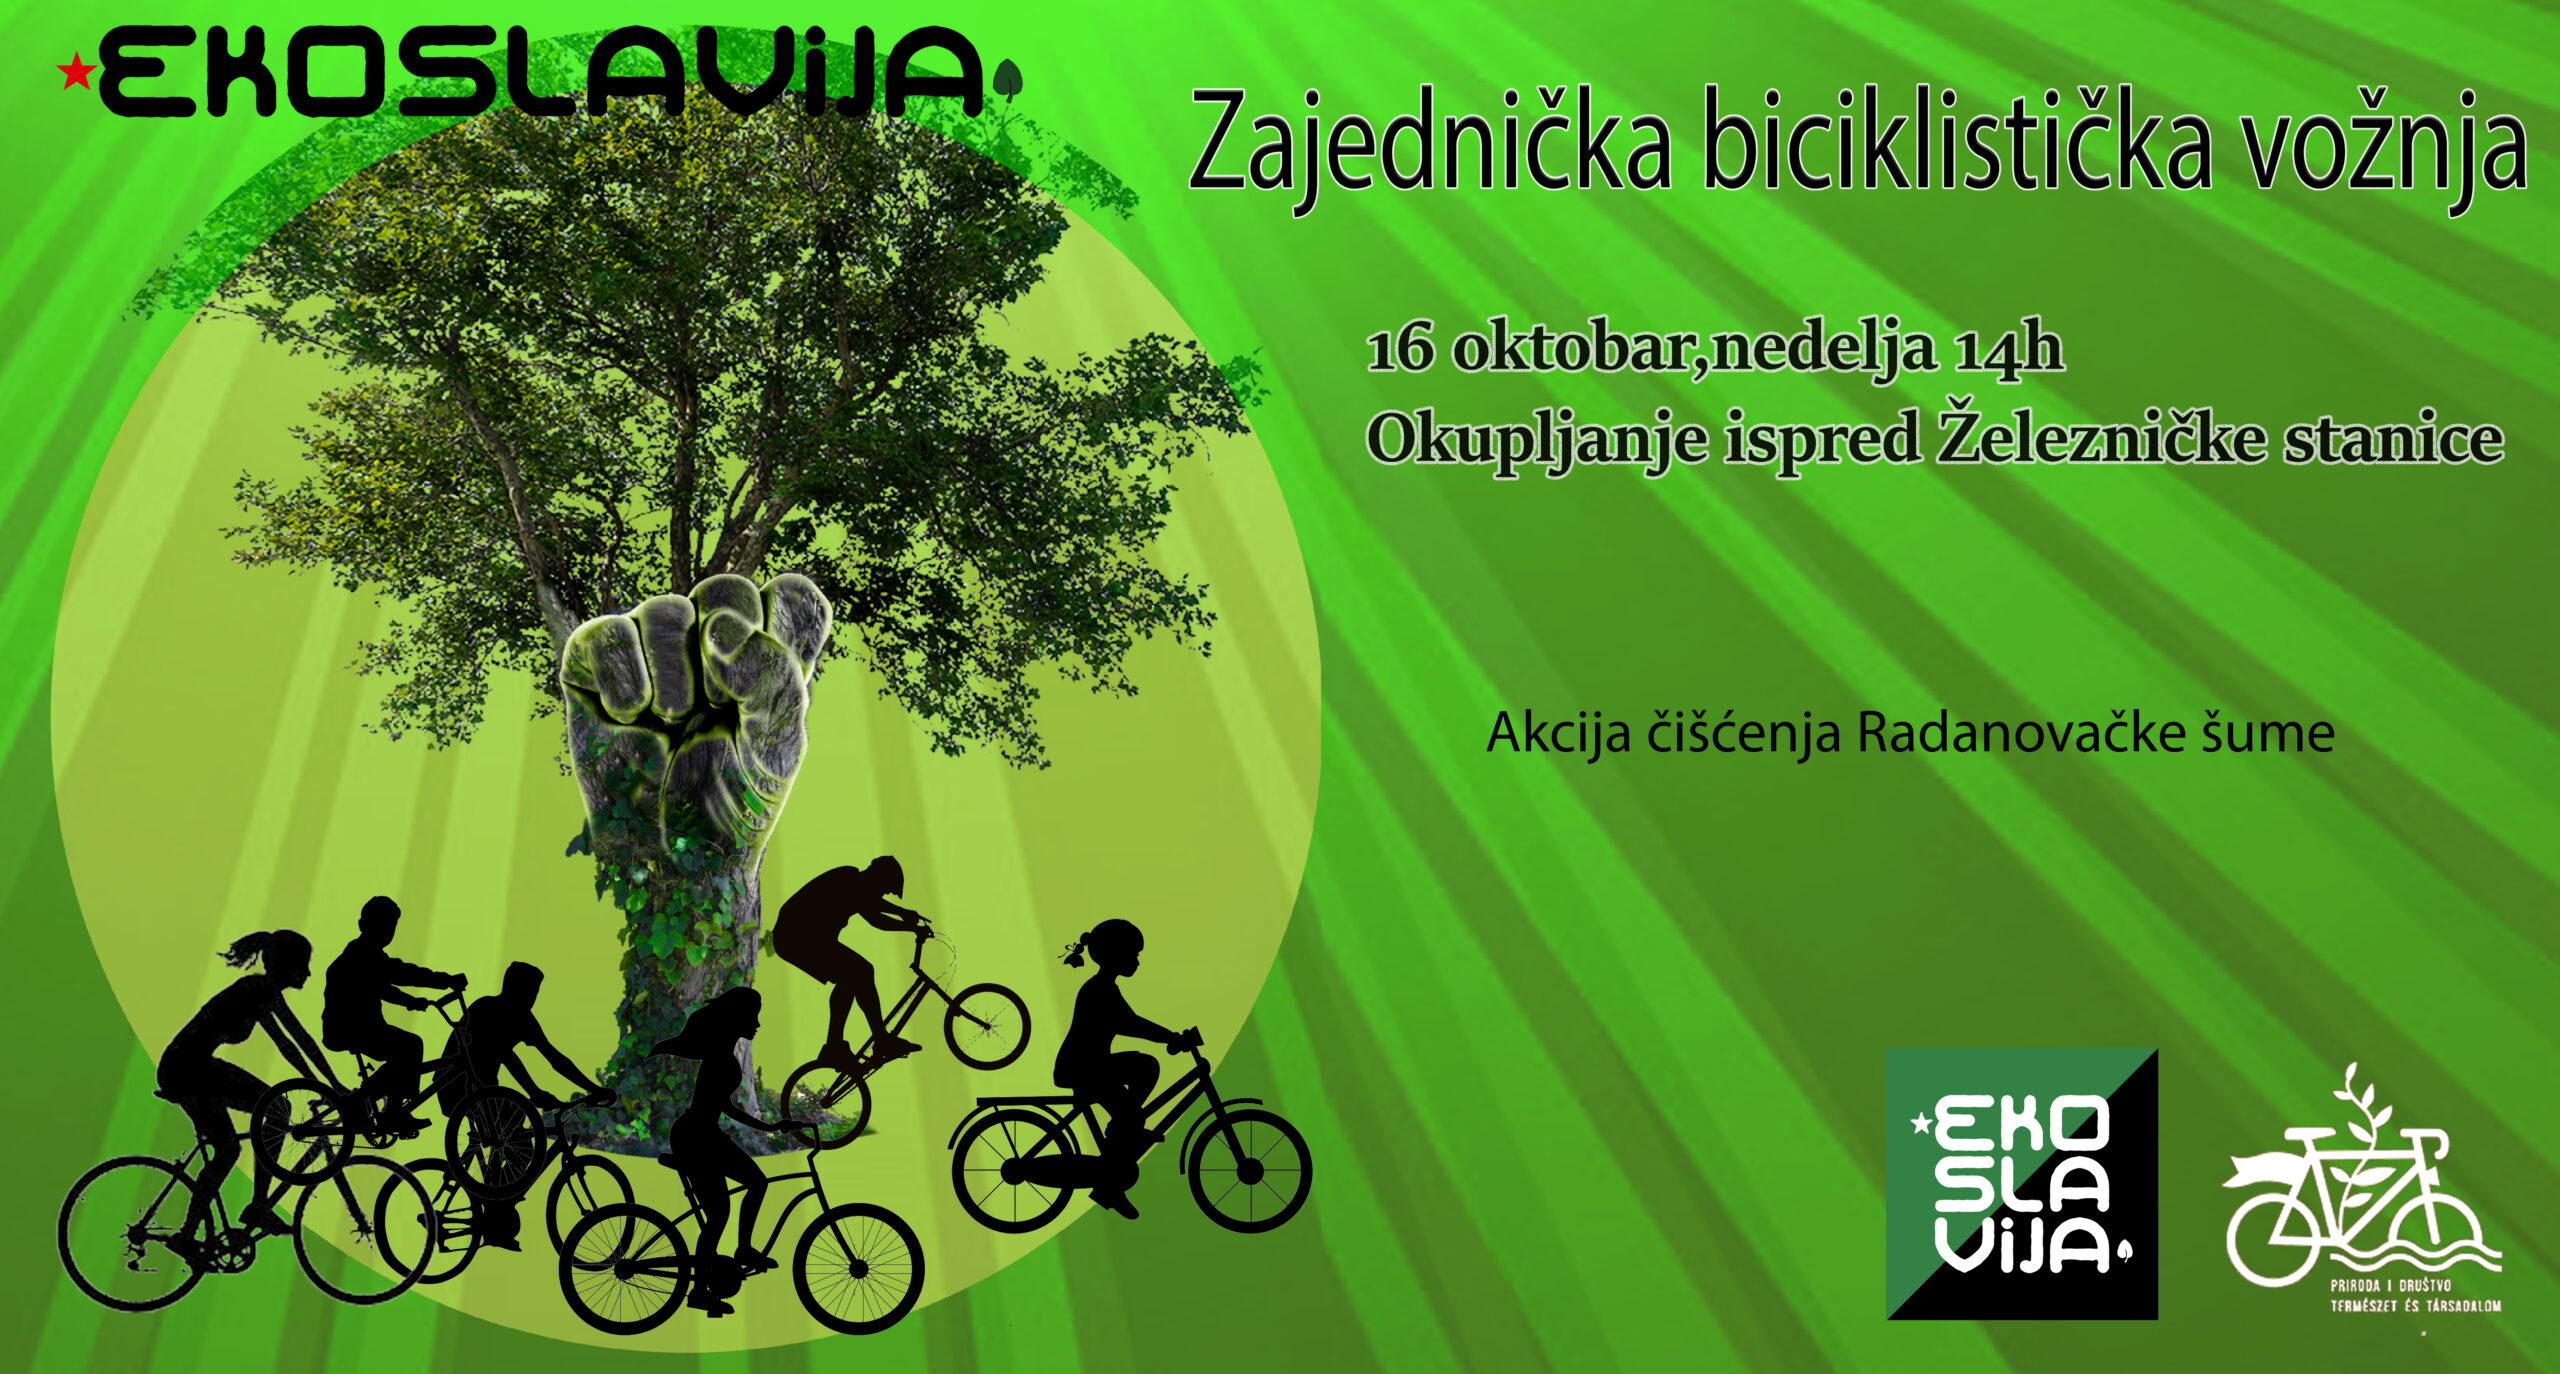 Udruženje “Ekoslavija” u nedelju organizuje biciklističku vožnju i uređenje Radanovačke šume